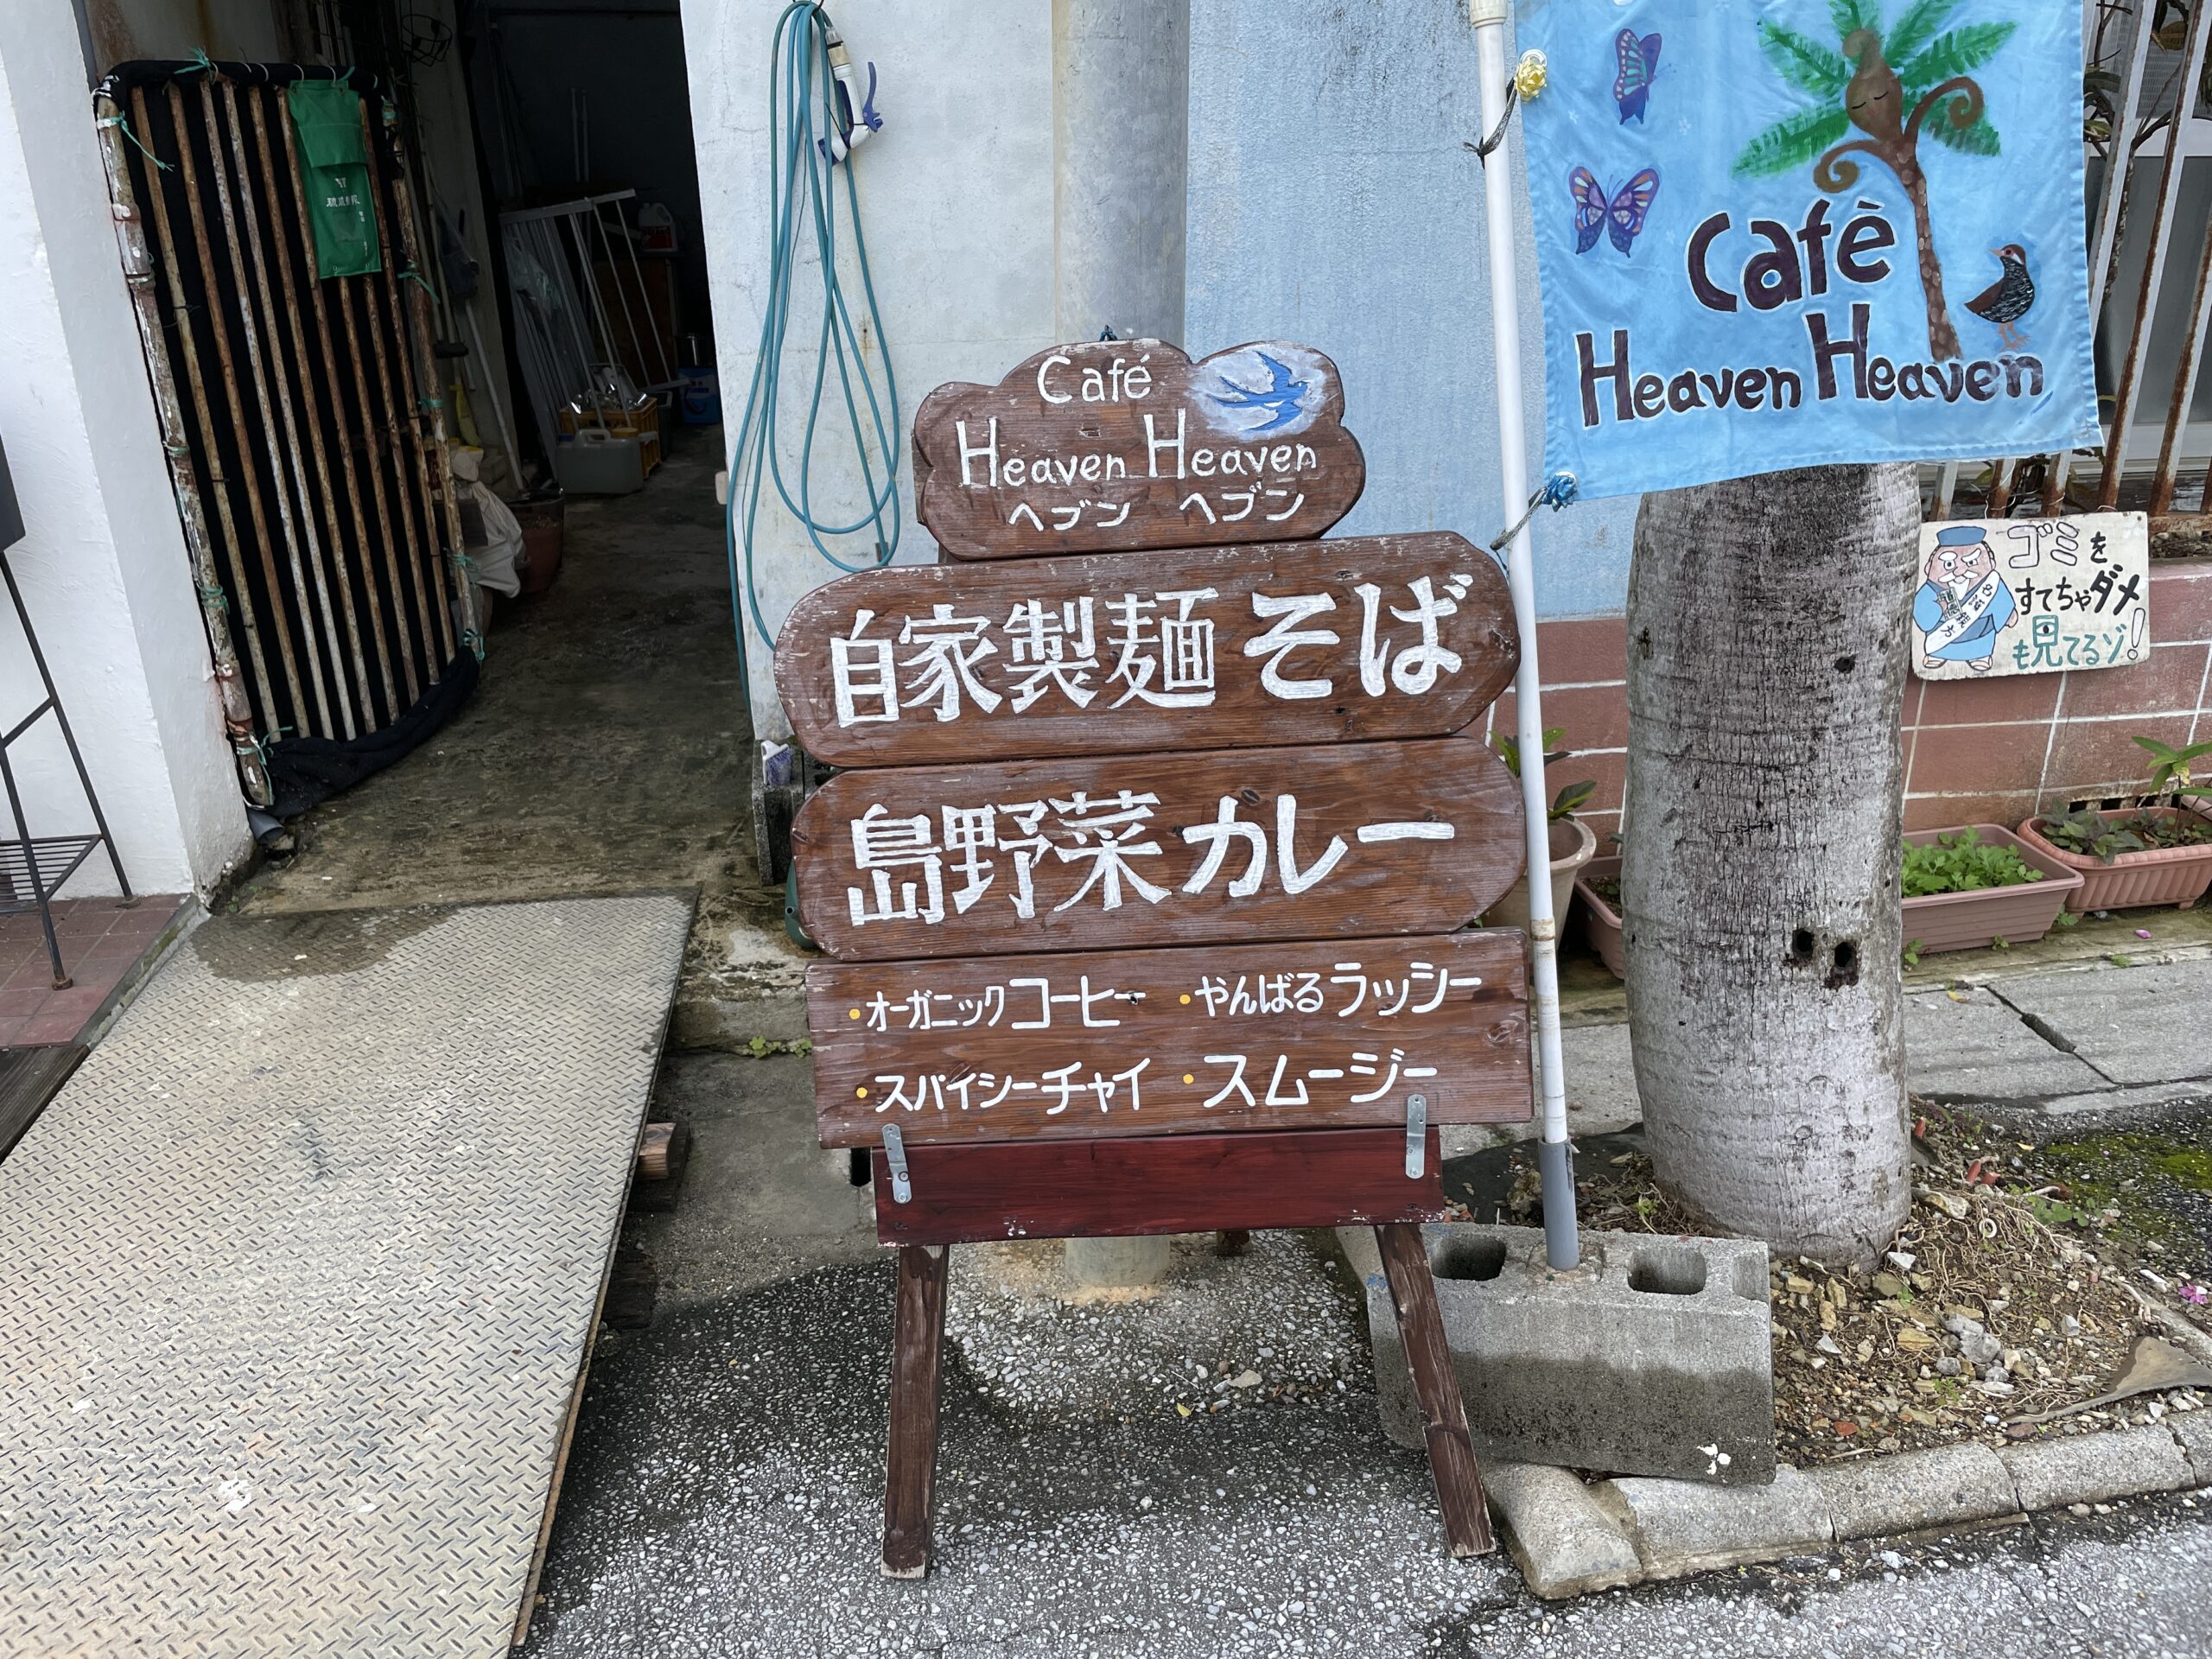 名護市辺野古『Heaven Heaven』オサレカフェで食べるあっさり優しい豚骨ベースの沖縄そば